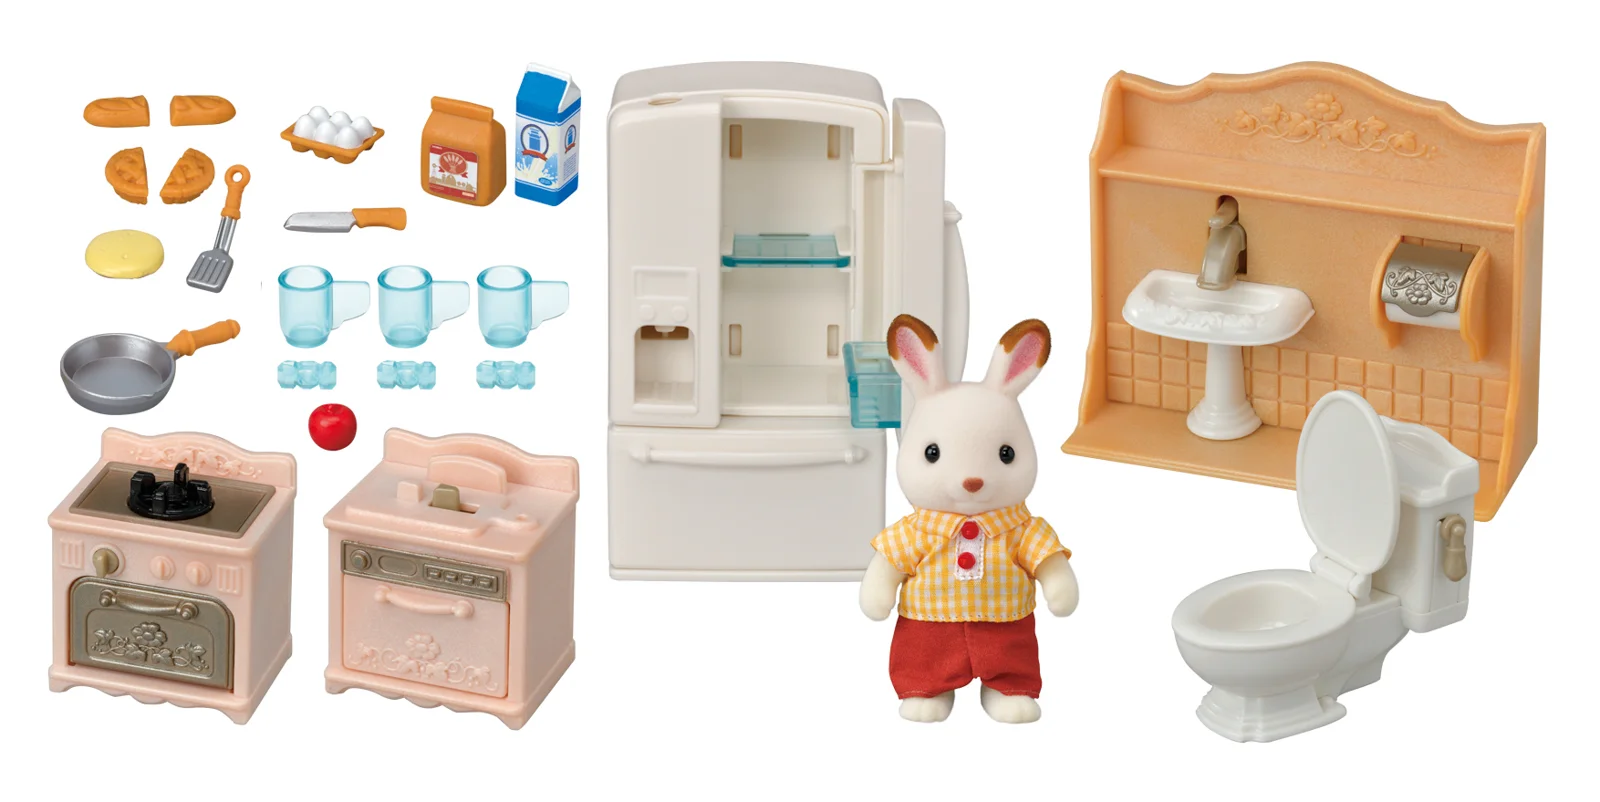 Nábytek - startovací set nábytků a "chocolate" králík taťka